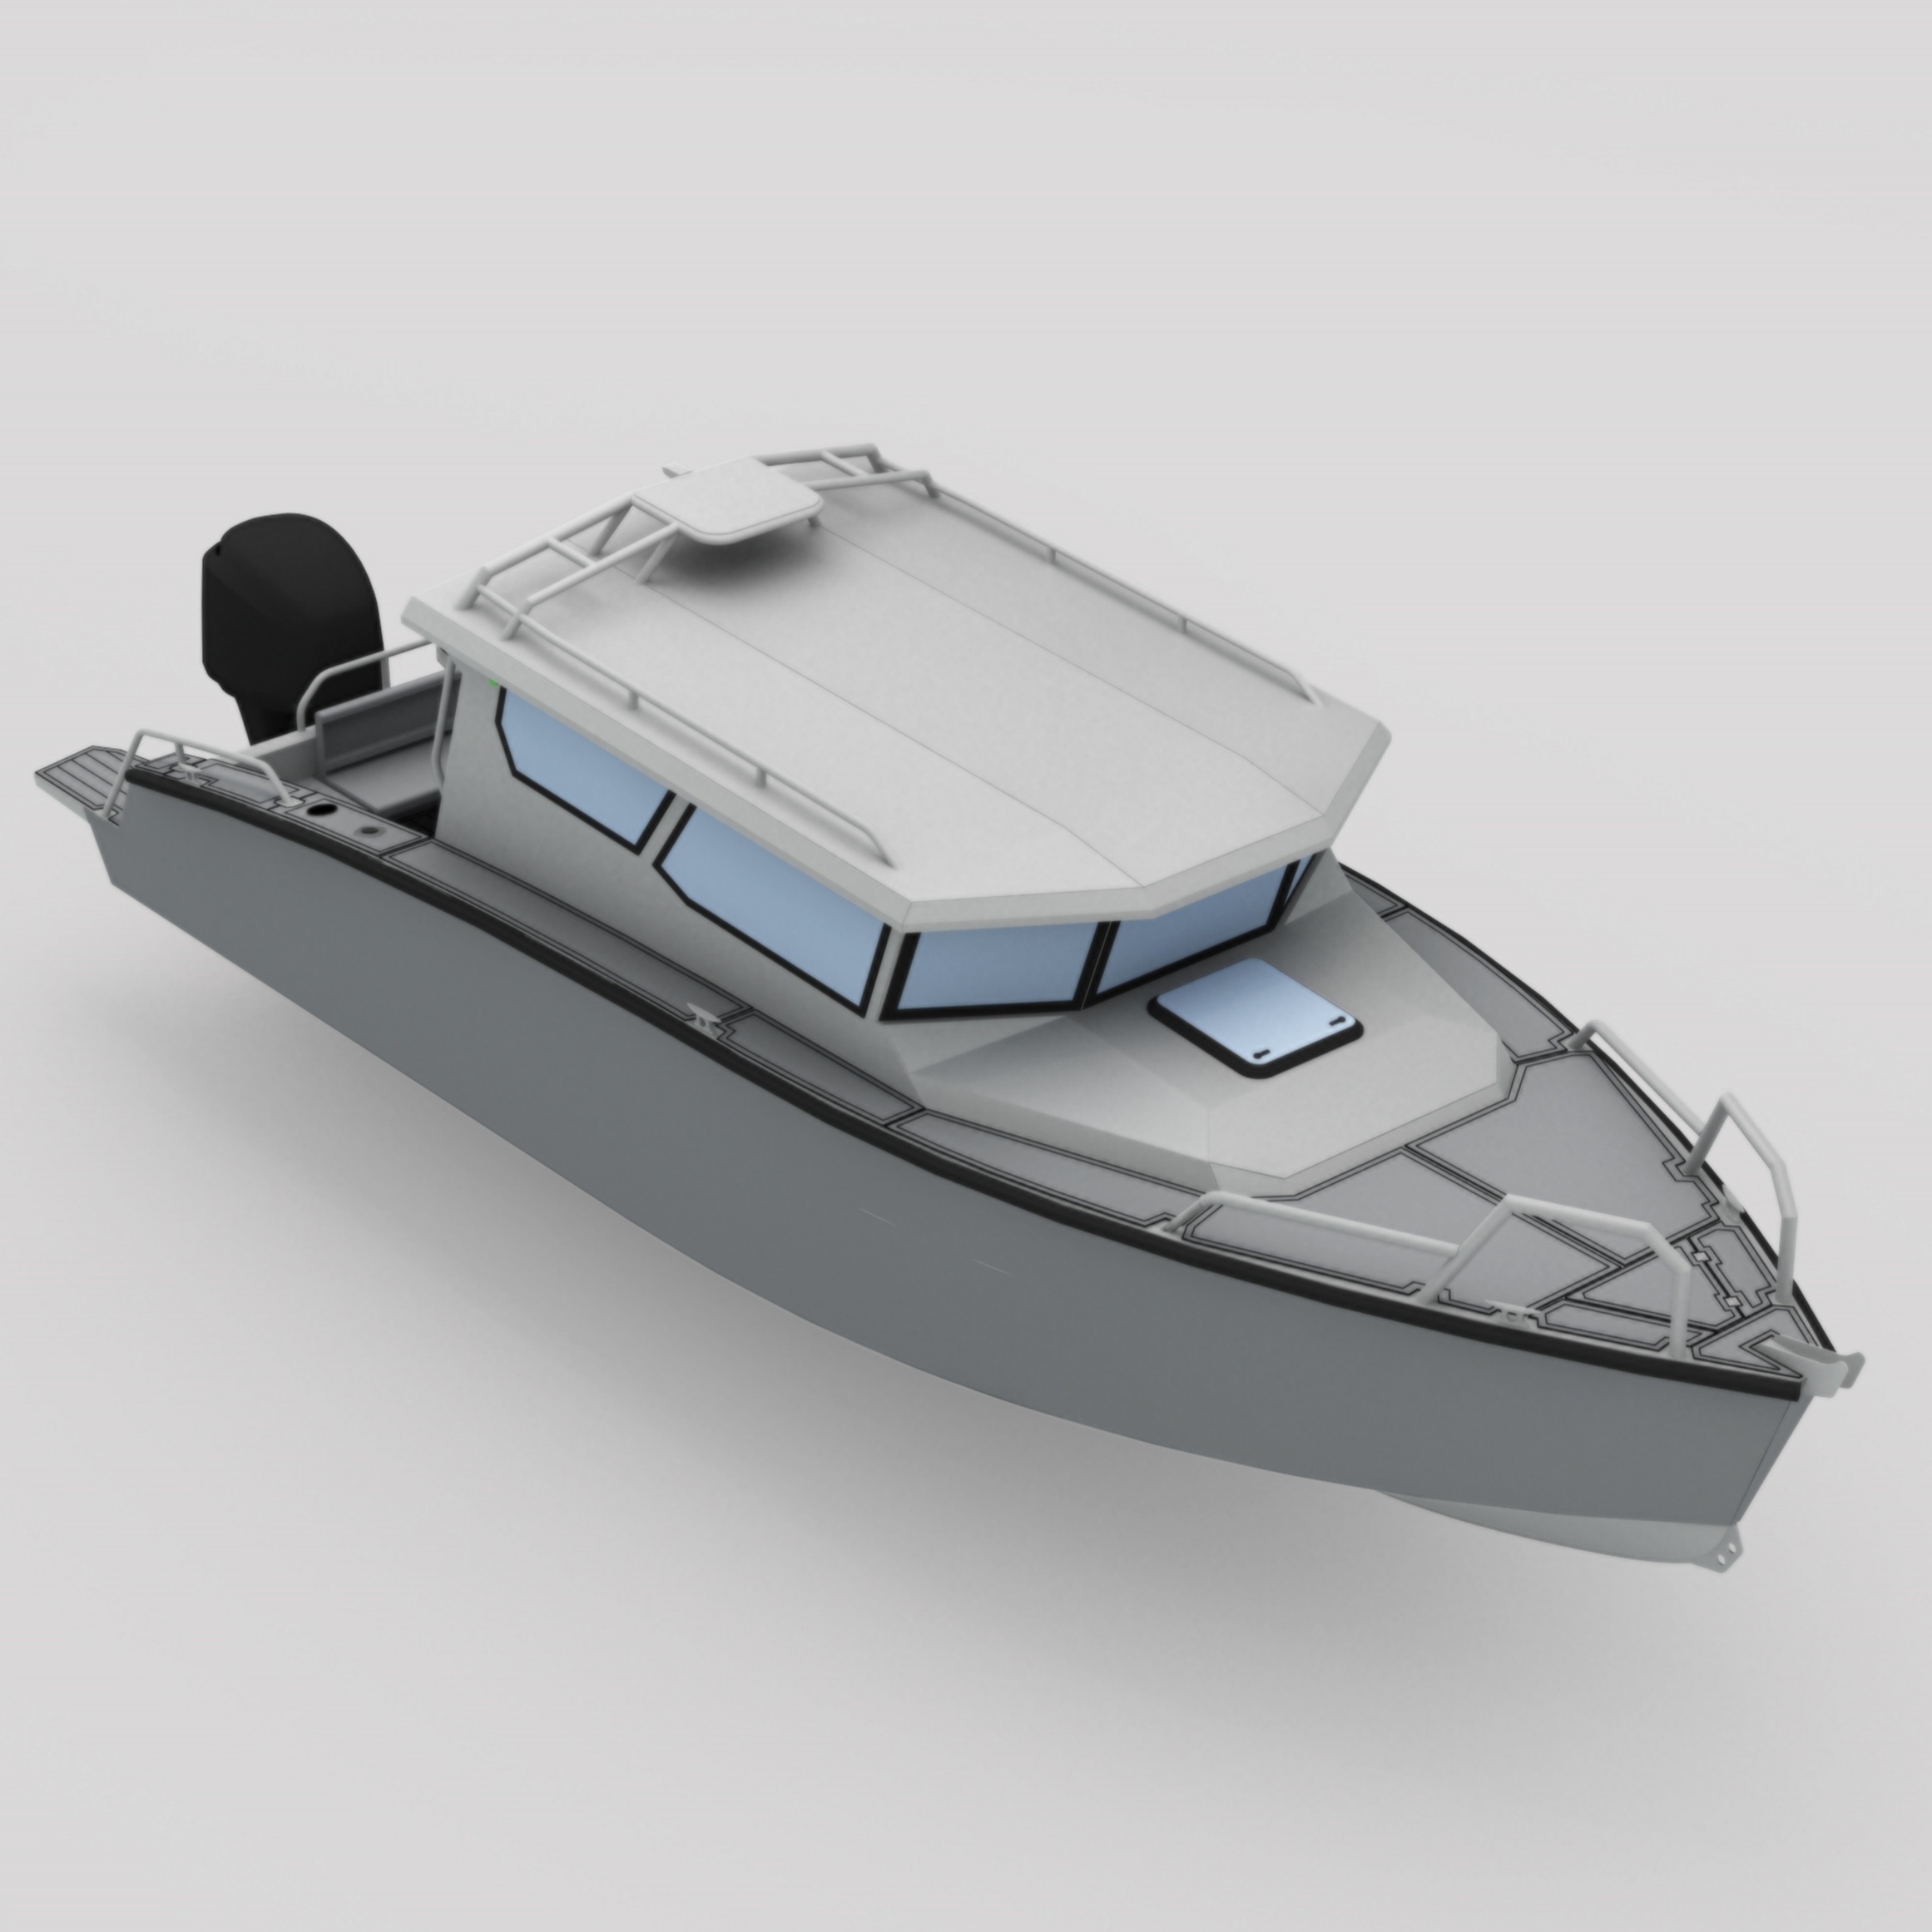 Bladecraft 8.4 מ' סירת אלומיניום לסיורי ספורט דיג